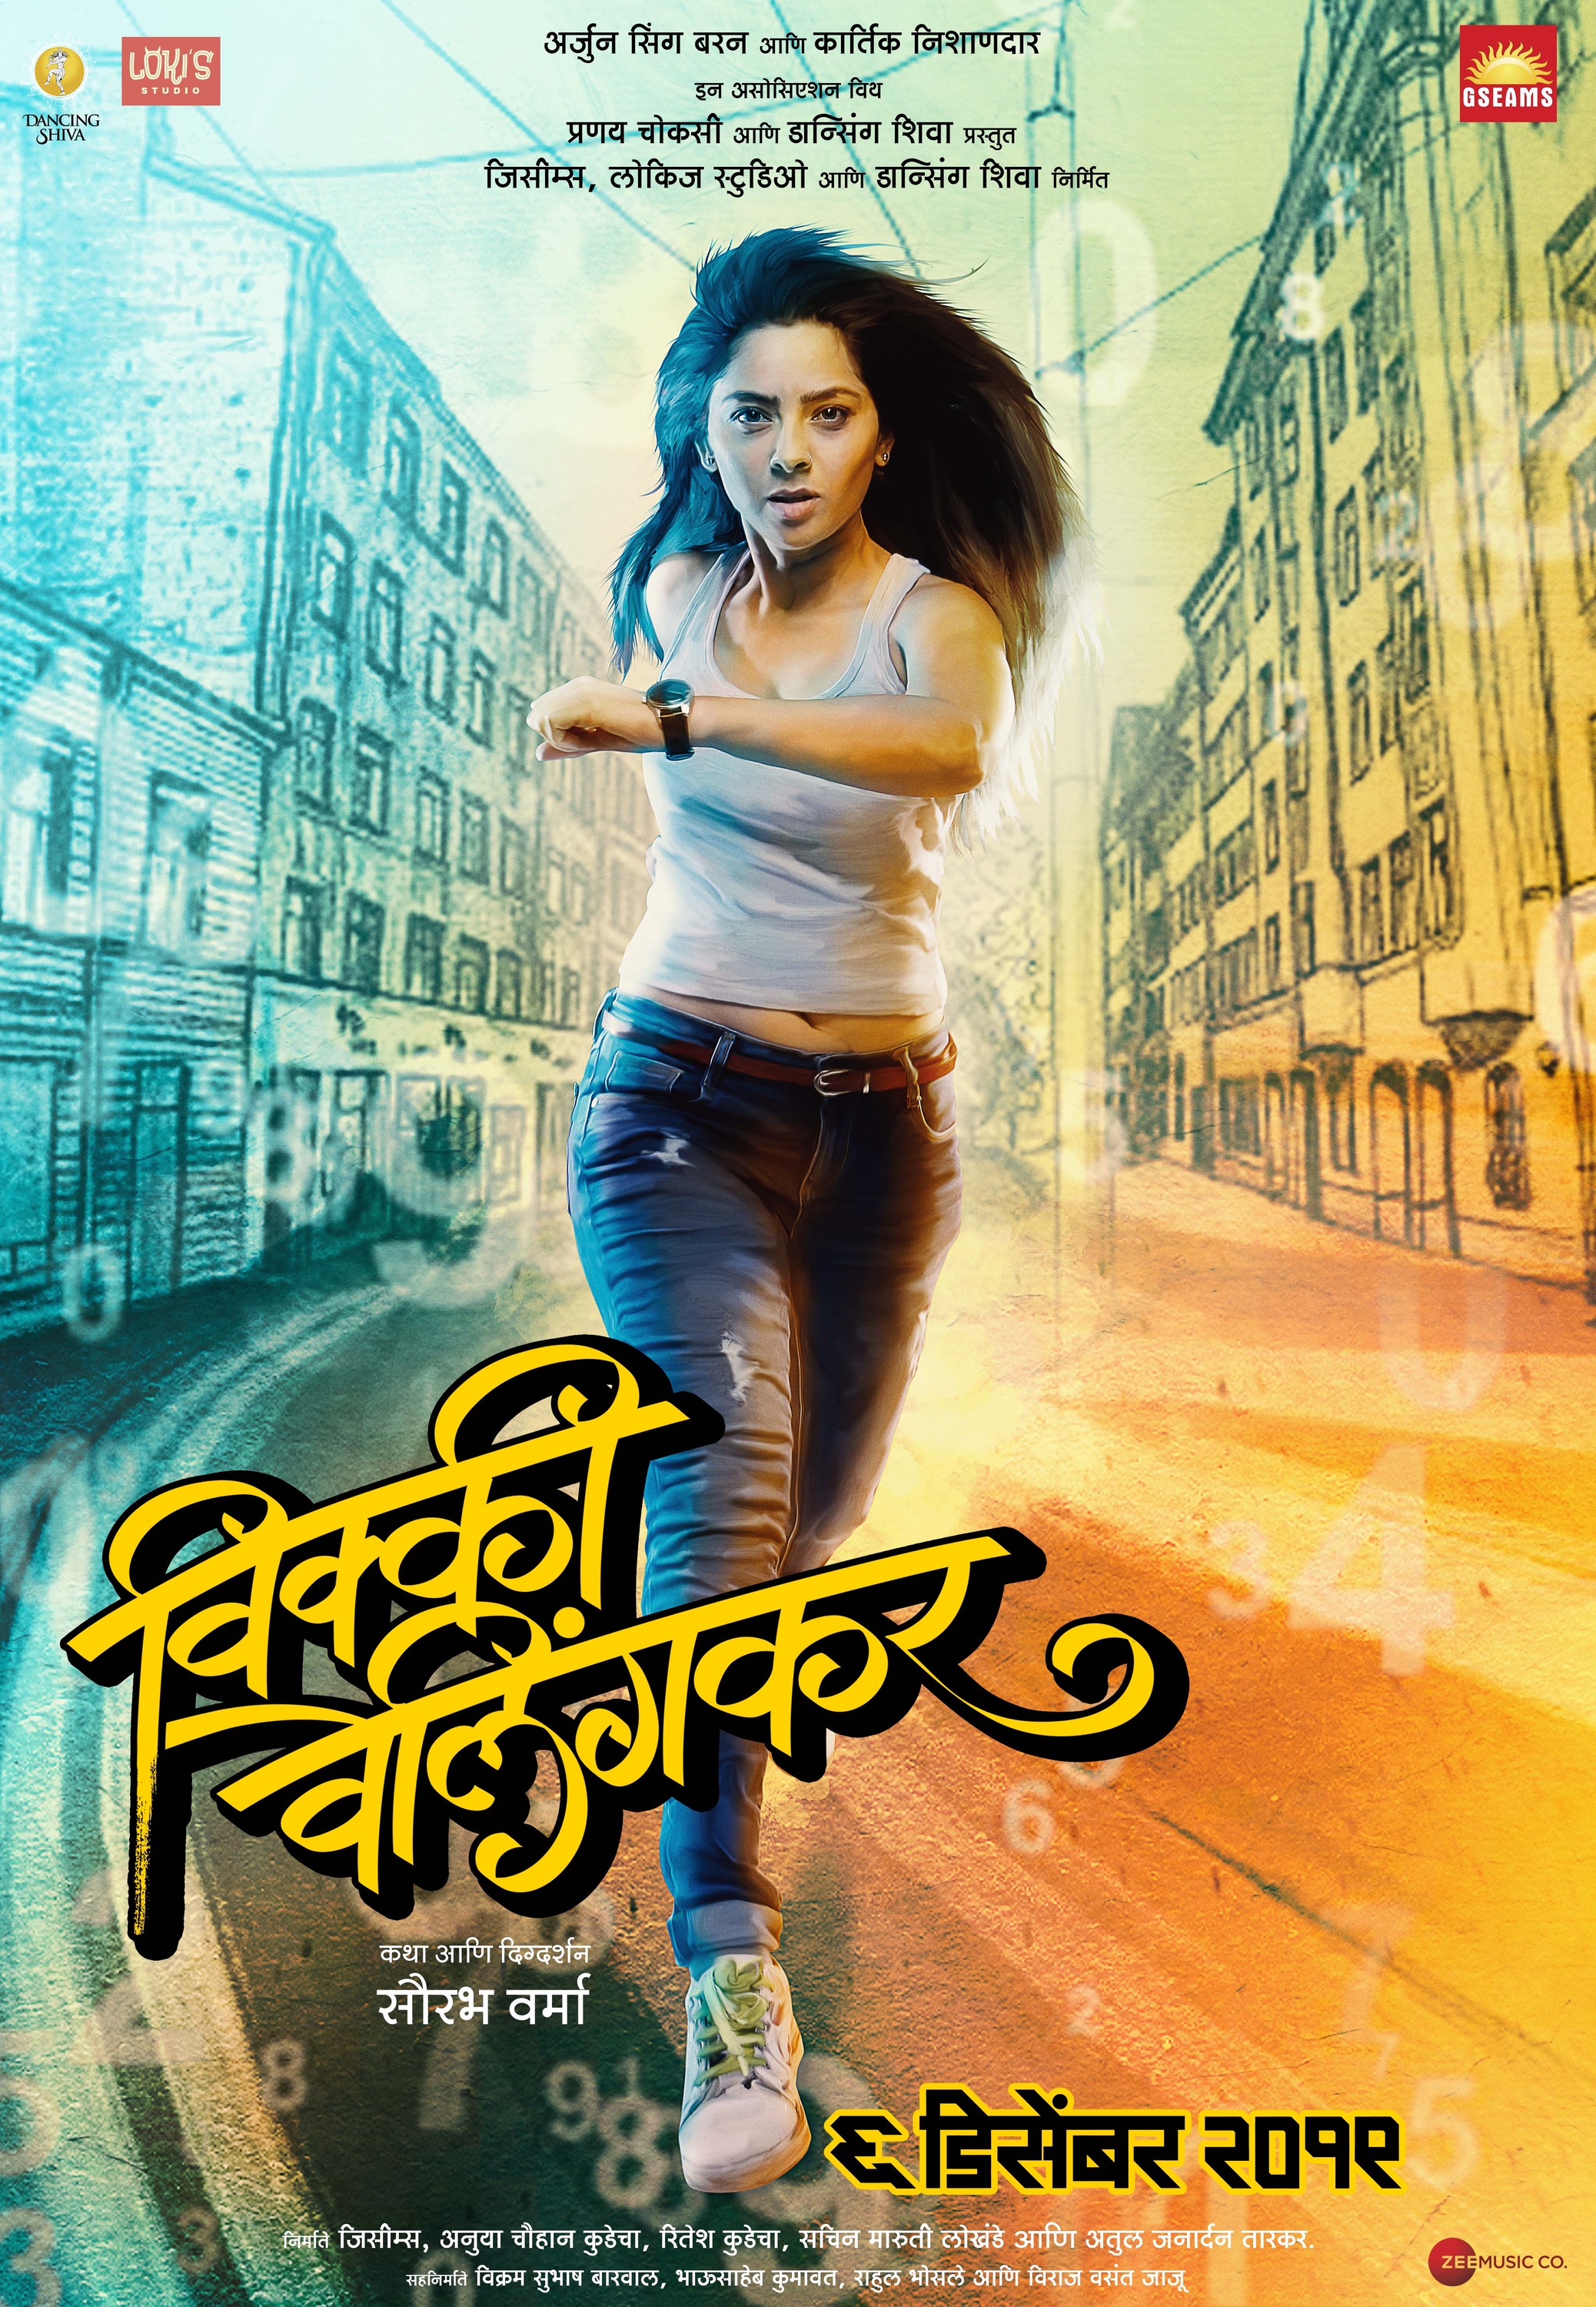 Mega Sized Movie Poster Image for Vicky Velingkar (#4 of 9)